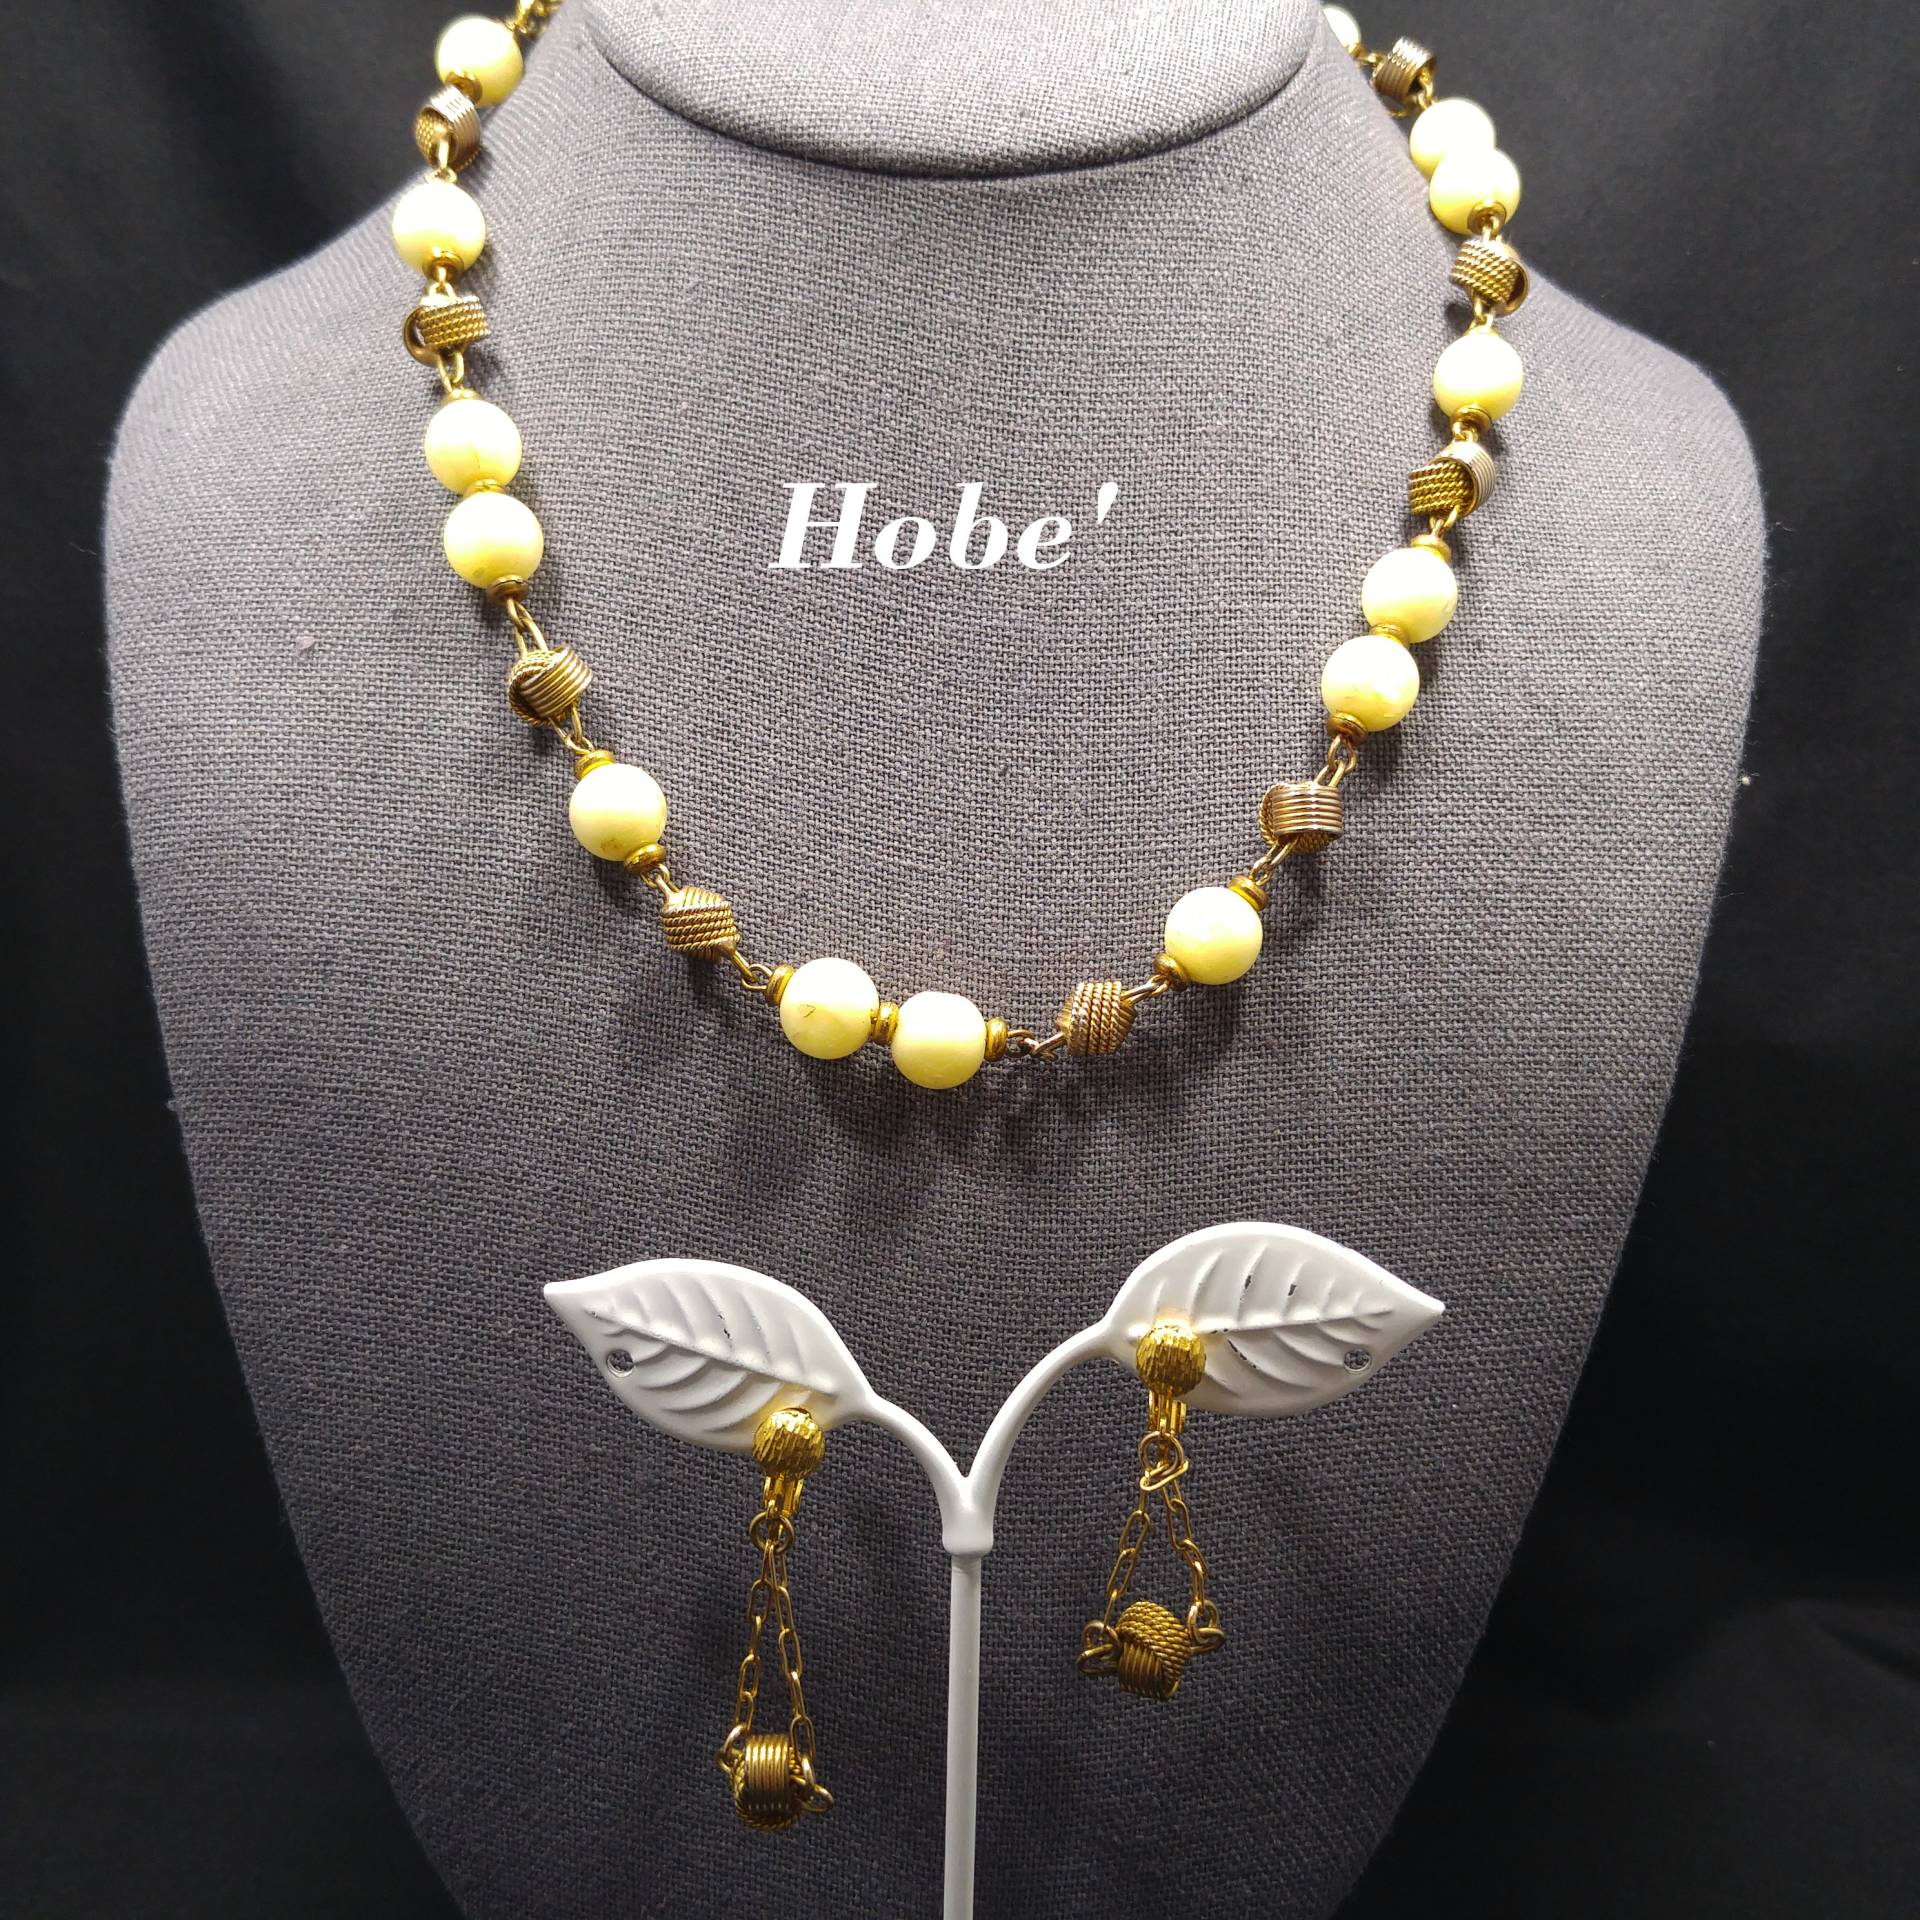 Hobe' Hellgelbe Lucite Perlen Halskette & Passende Ohrringe, Vergoldet, 1950Er Jahre Vintage Schmuck von UncoveringVintage